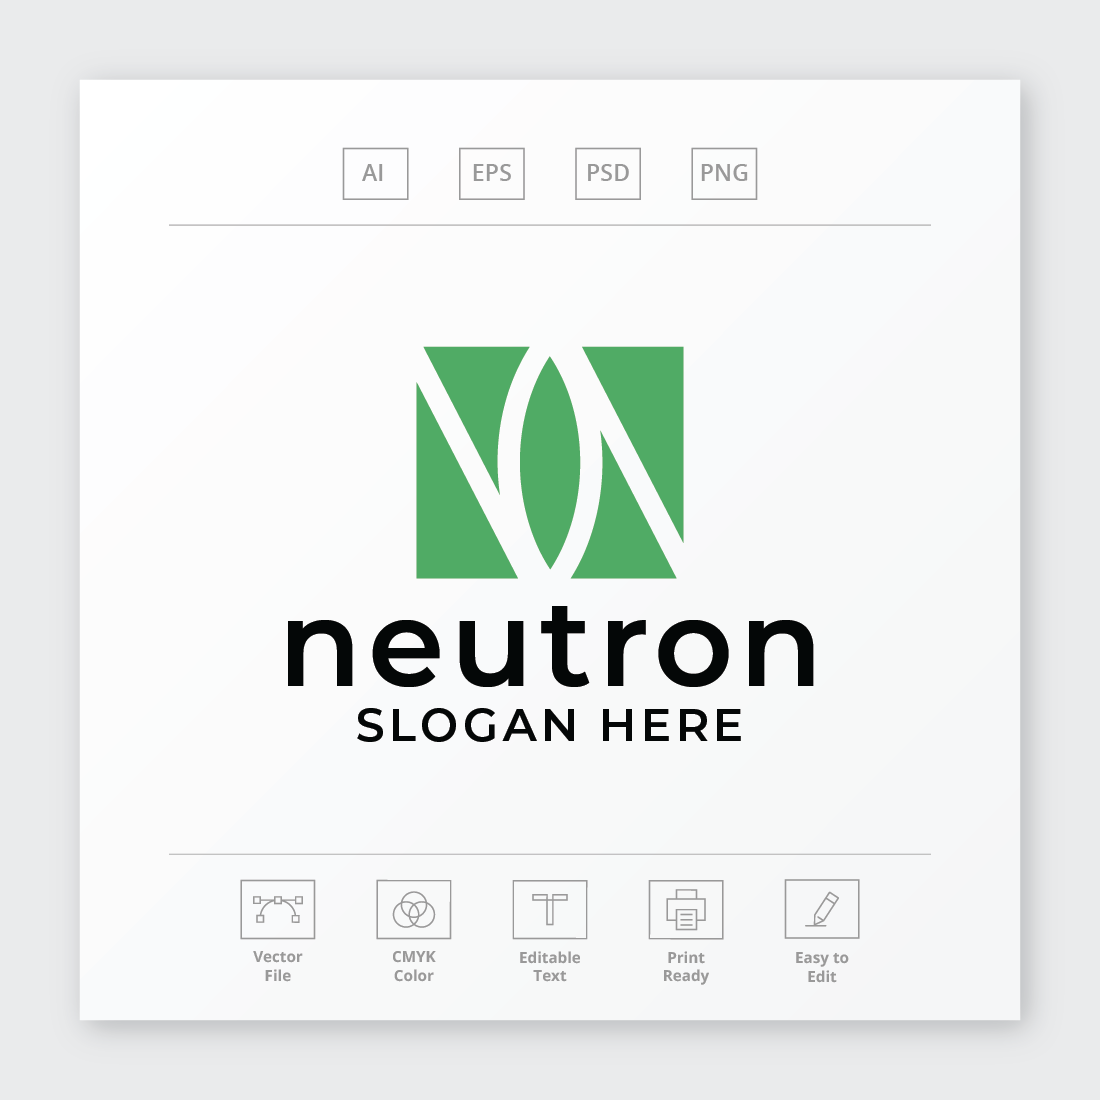 Neutron Letter N Logo cover image.